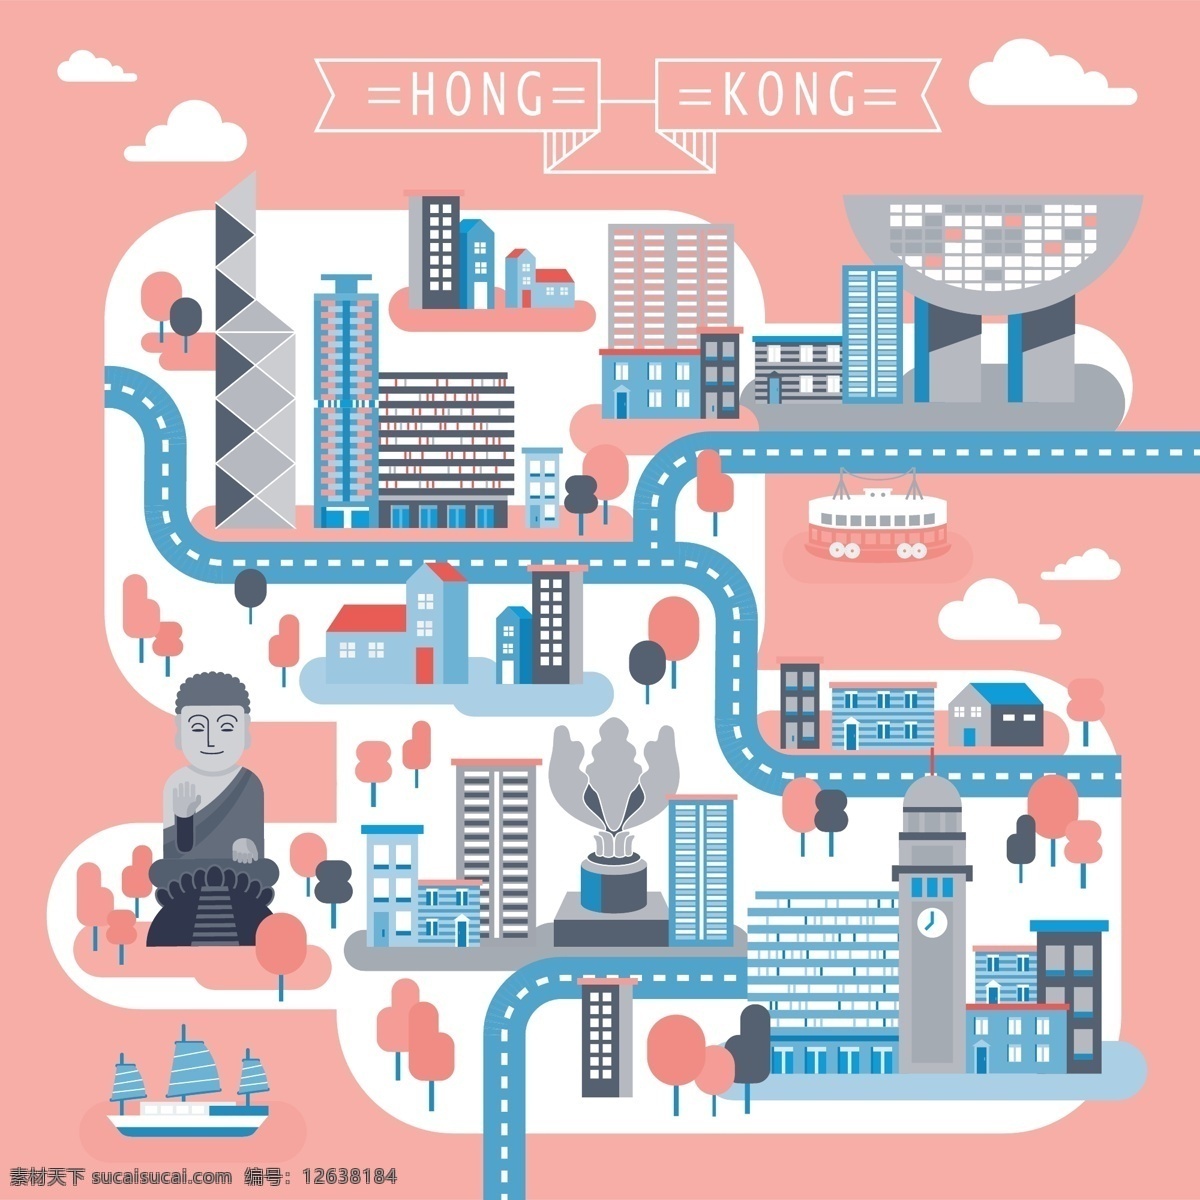 可爱 旅游 路线图 手绘 手绘地图 手绘路线图 香港旅行 旅行路线图 卡通地图 卡通路线图 香港路线图 旅游景点 扁平化地图 地图 粉色